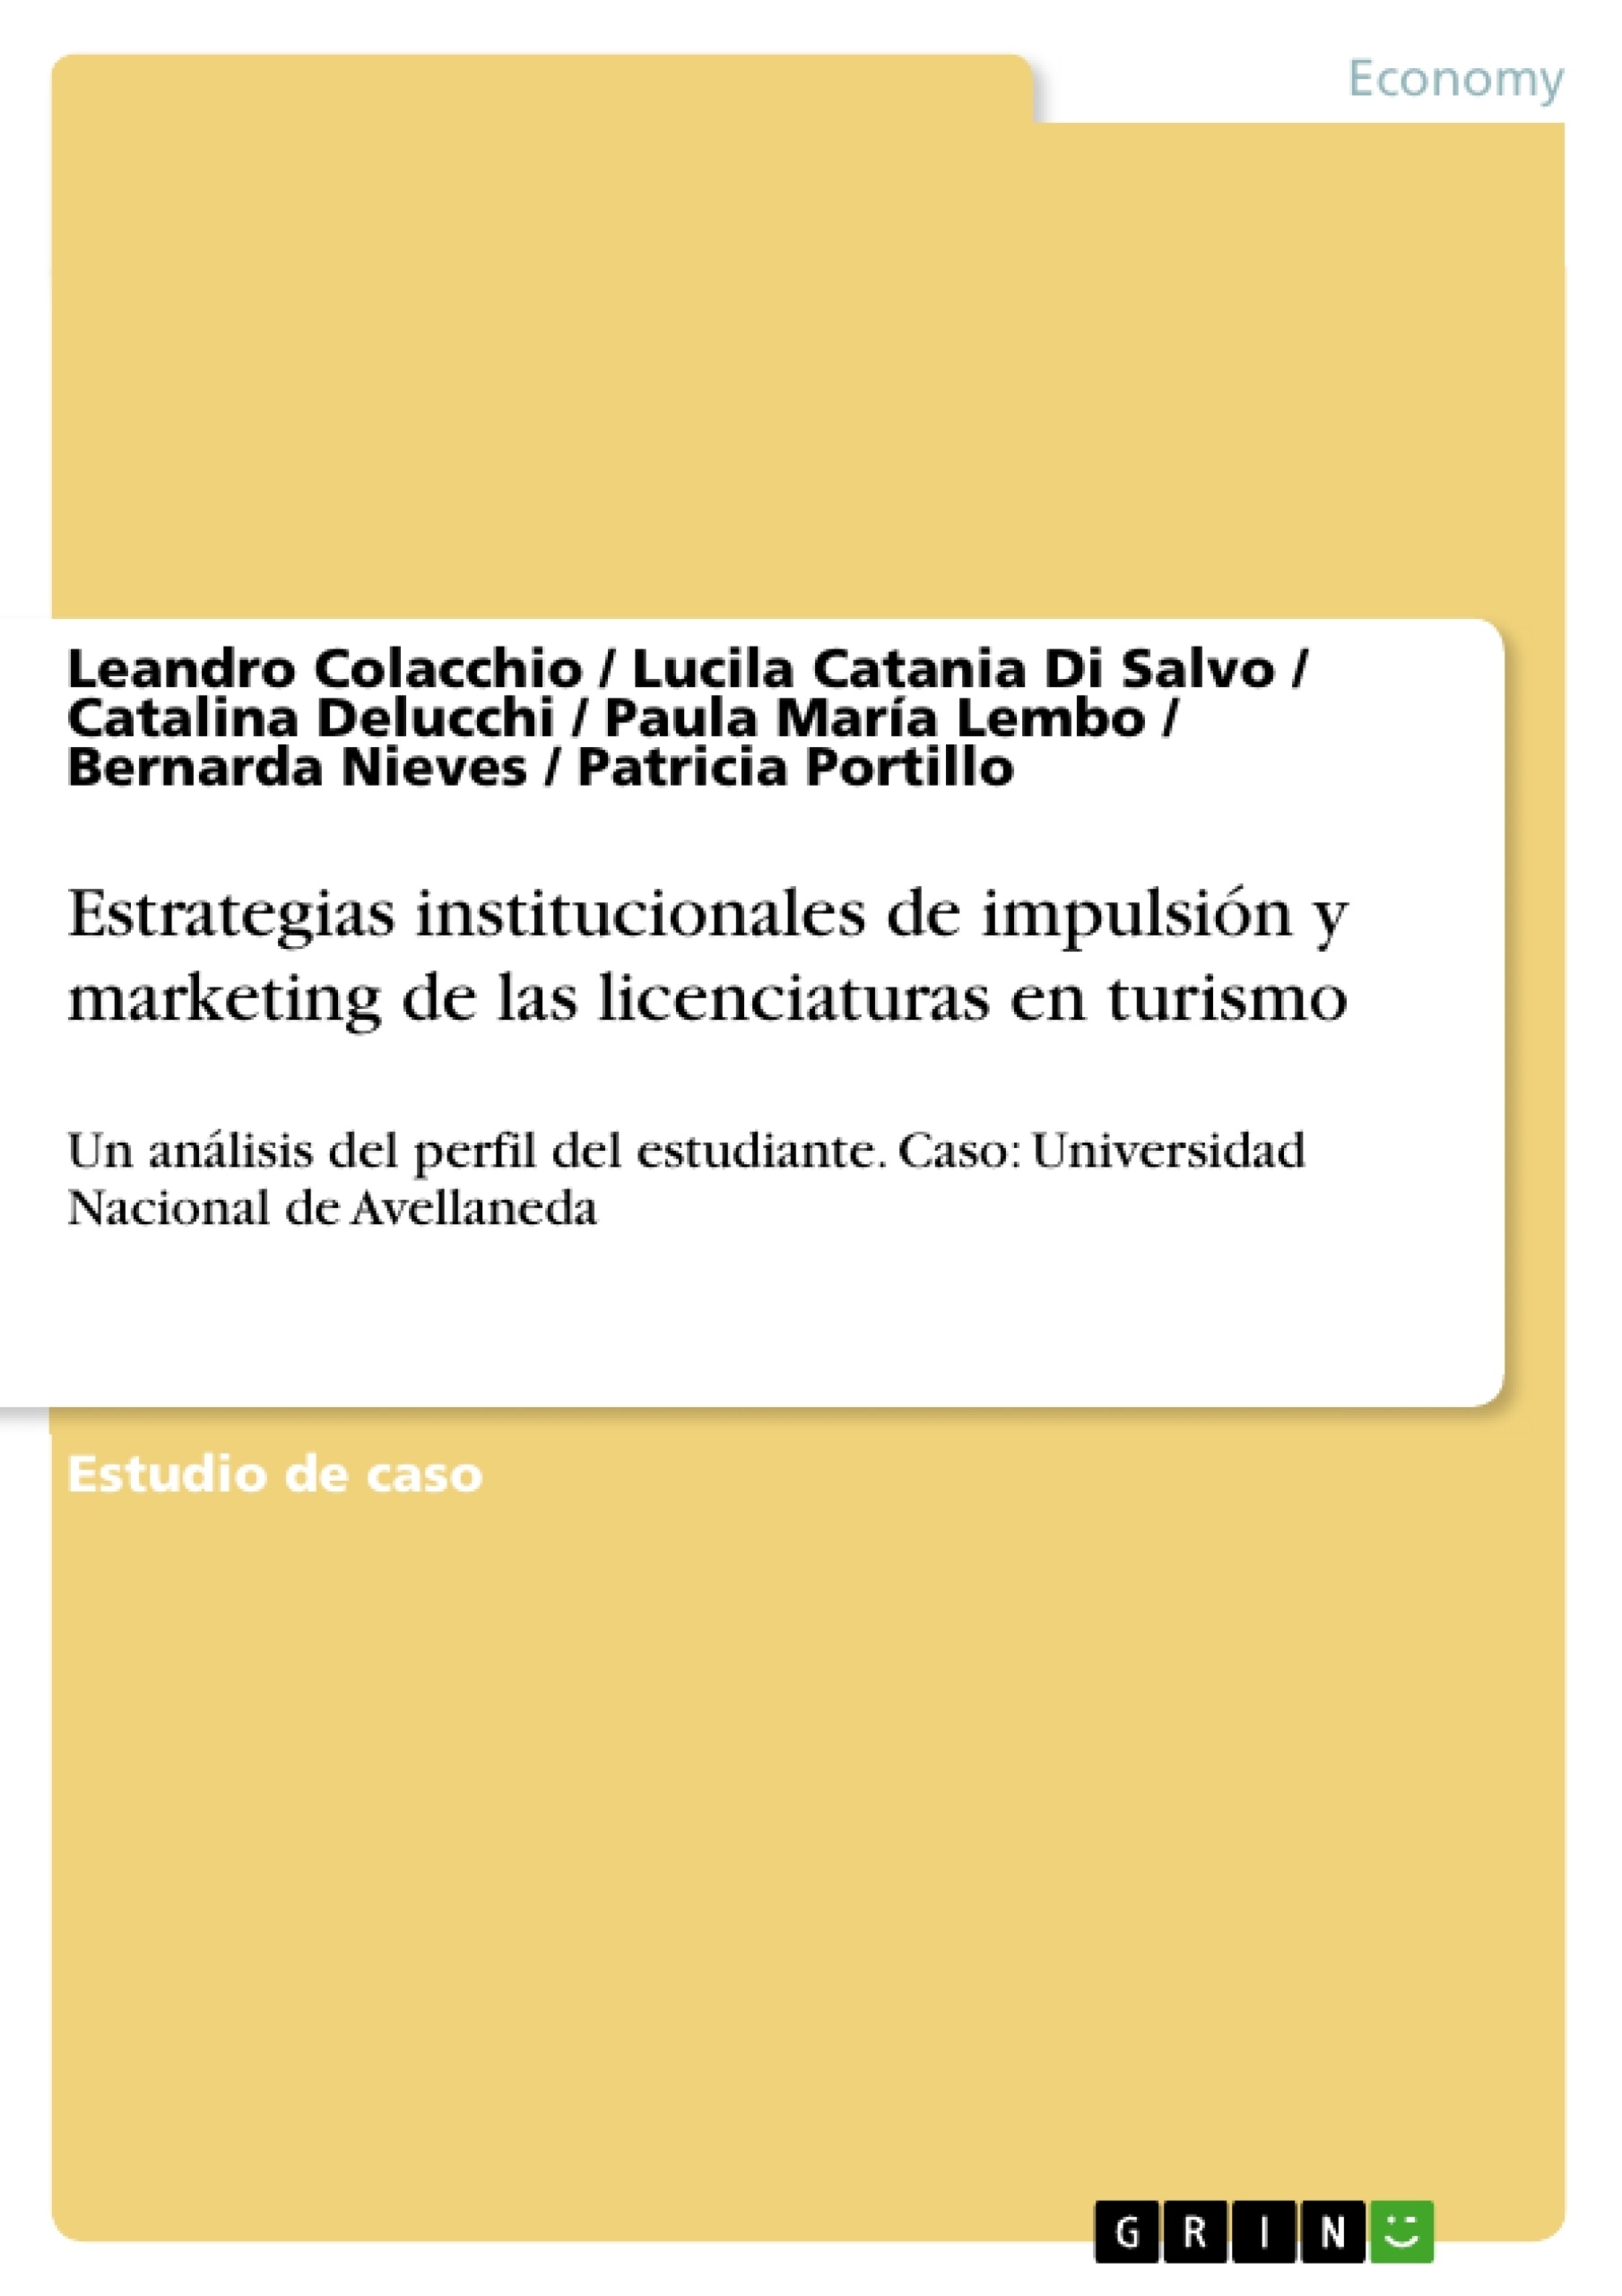 Titel: Estrategias institucionales de impulsión y marketing de las licenciaturas en
turismo